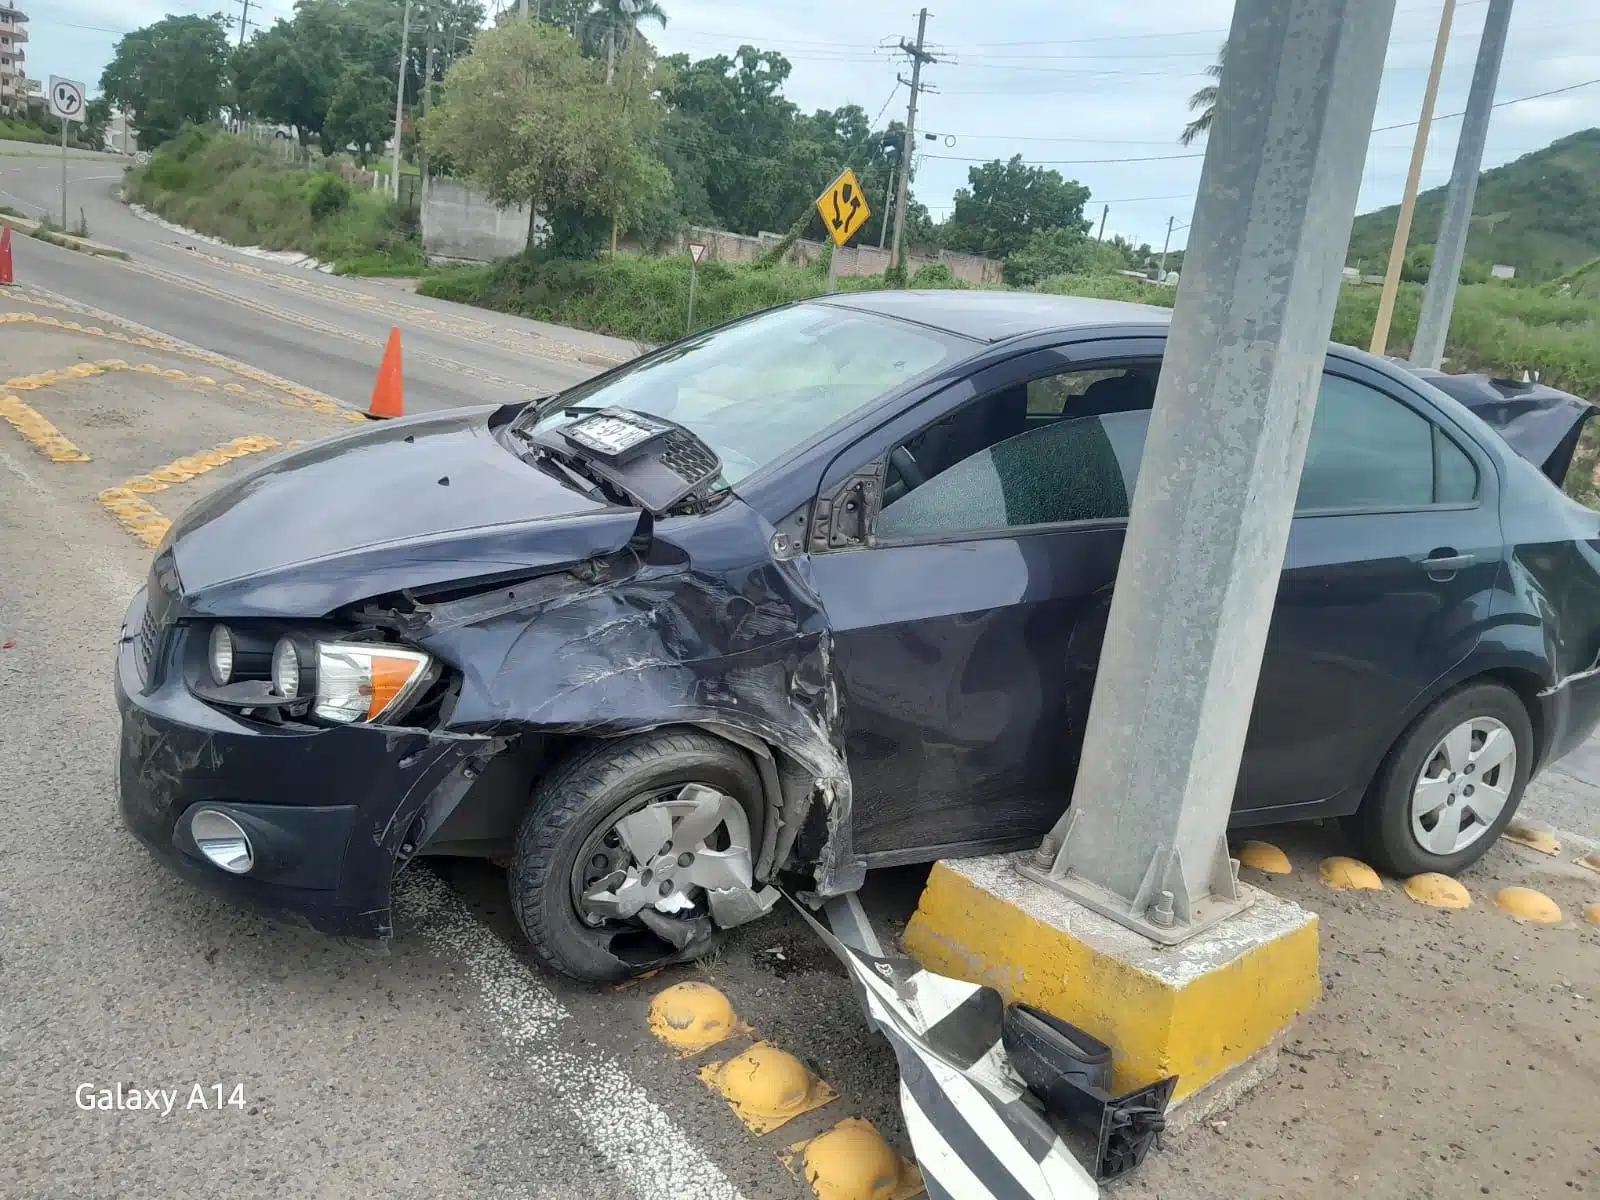 Vehículo Chevrolet Sonic impactado contra un poste y con daños en la carrocería